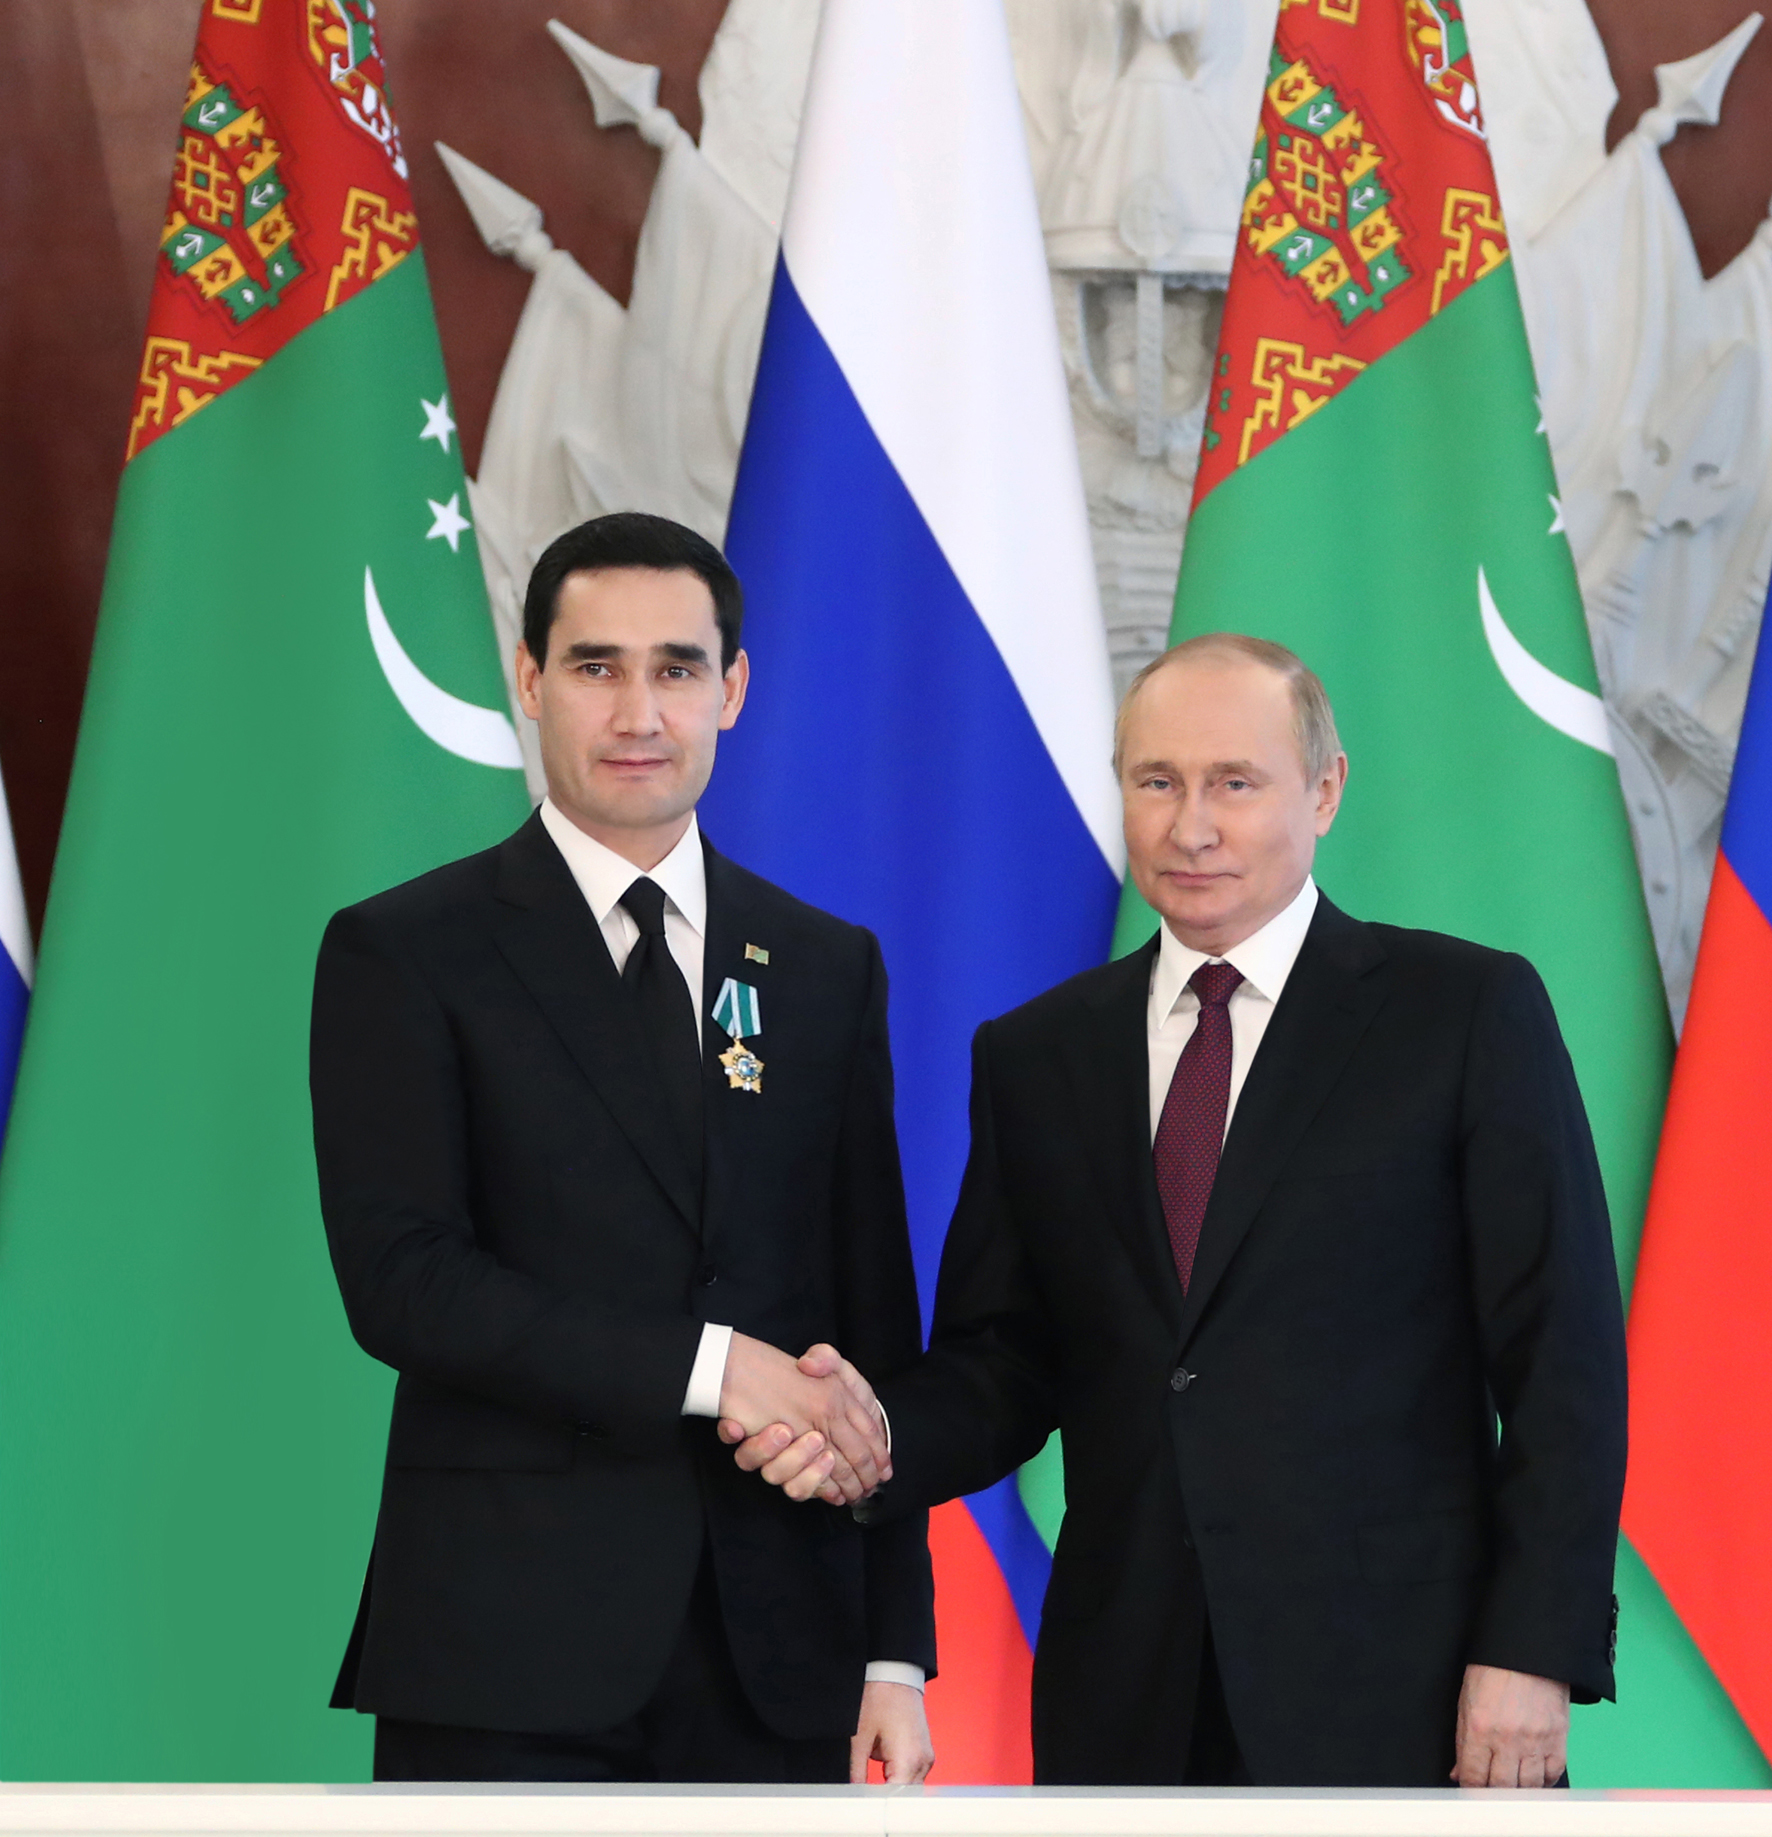 Туркменистан и Российская Федерация подтвердили приверженность отношениям углублённого стратегического партнёрства